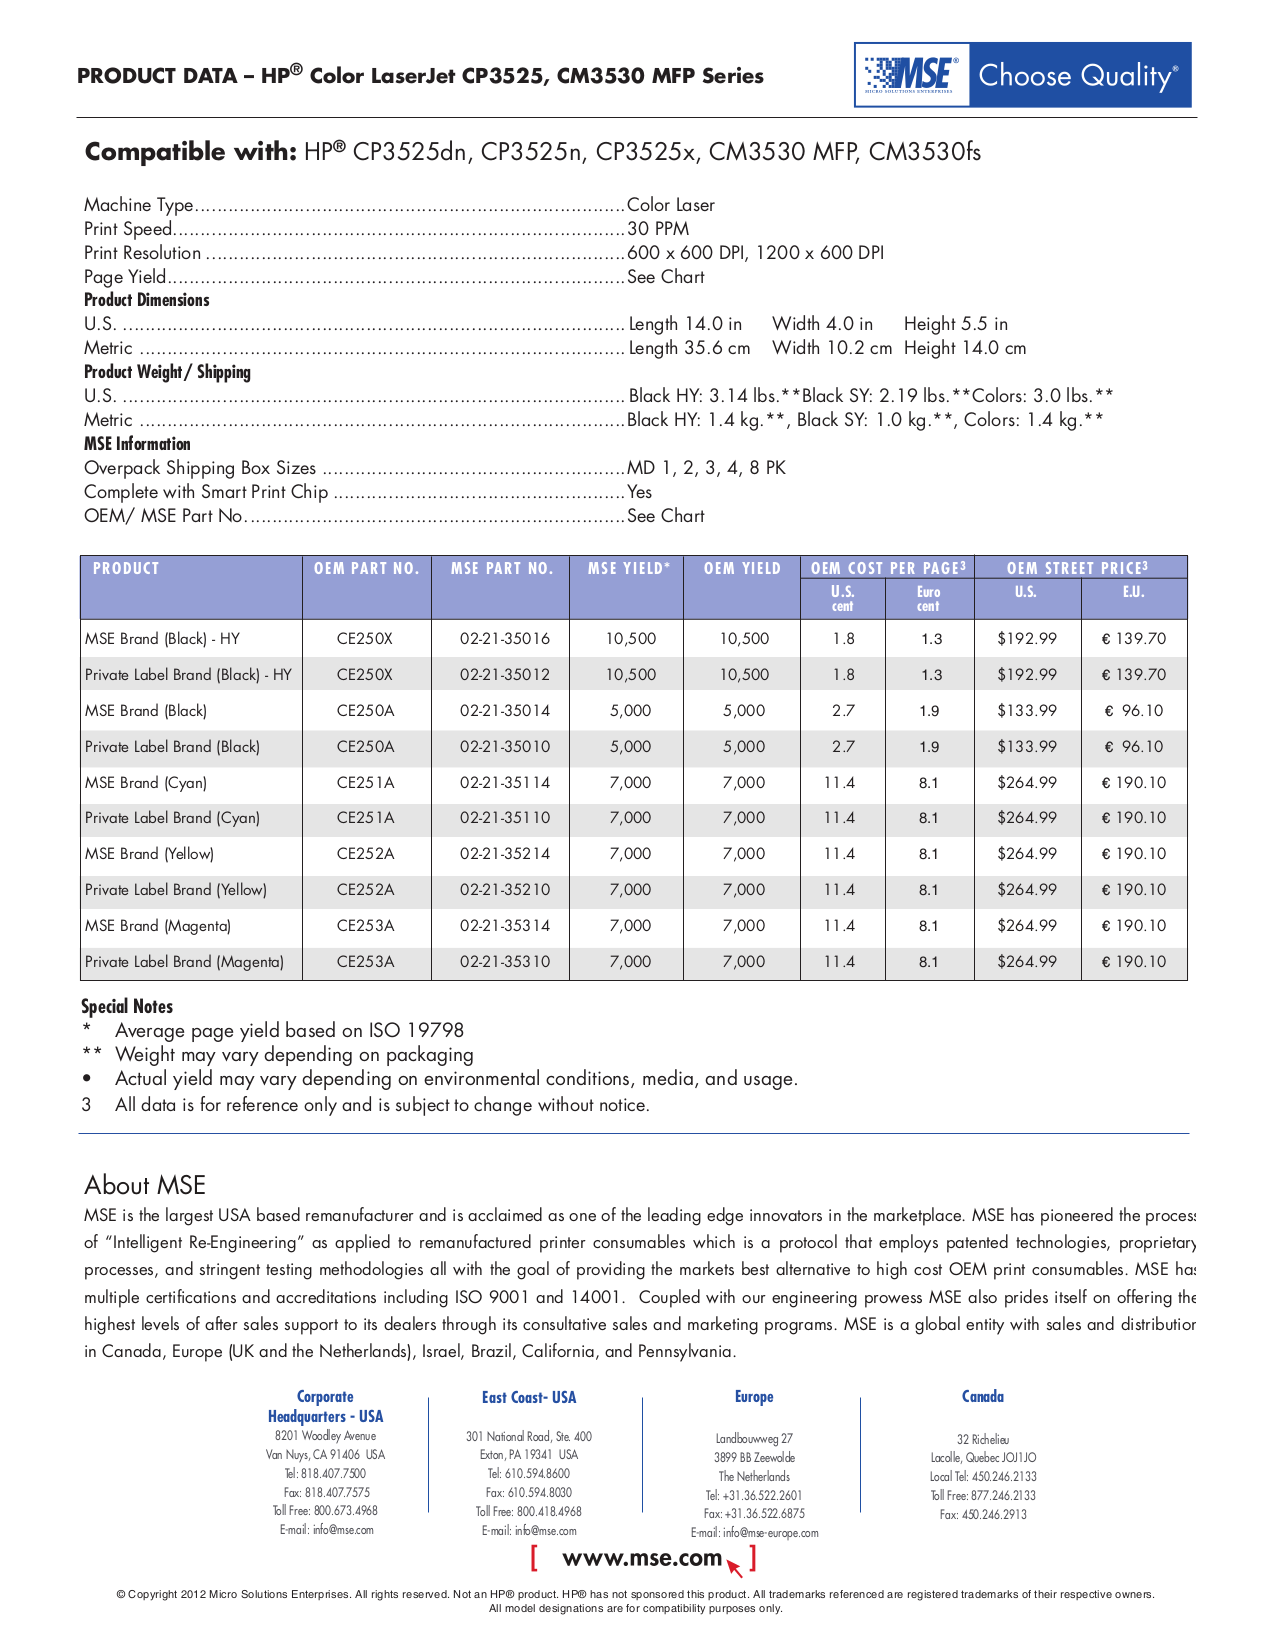 PDF manual for HP Printer Laserjet,Color Laserjet CP3525n